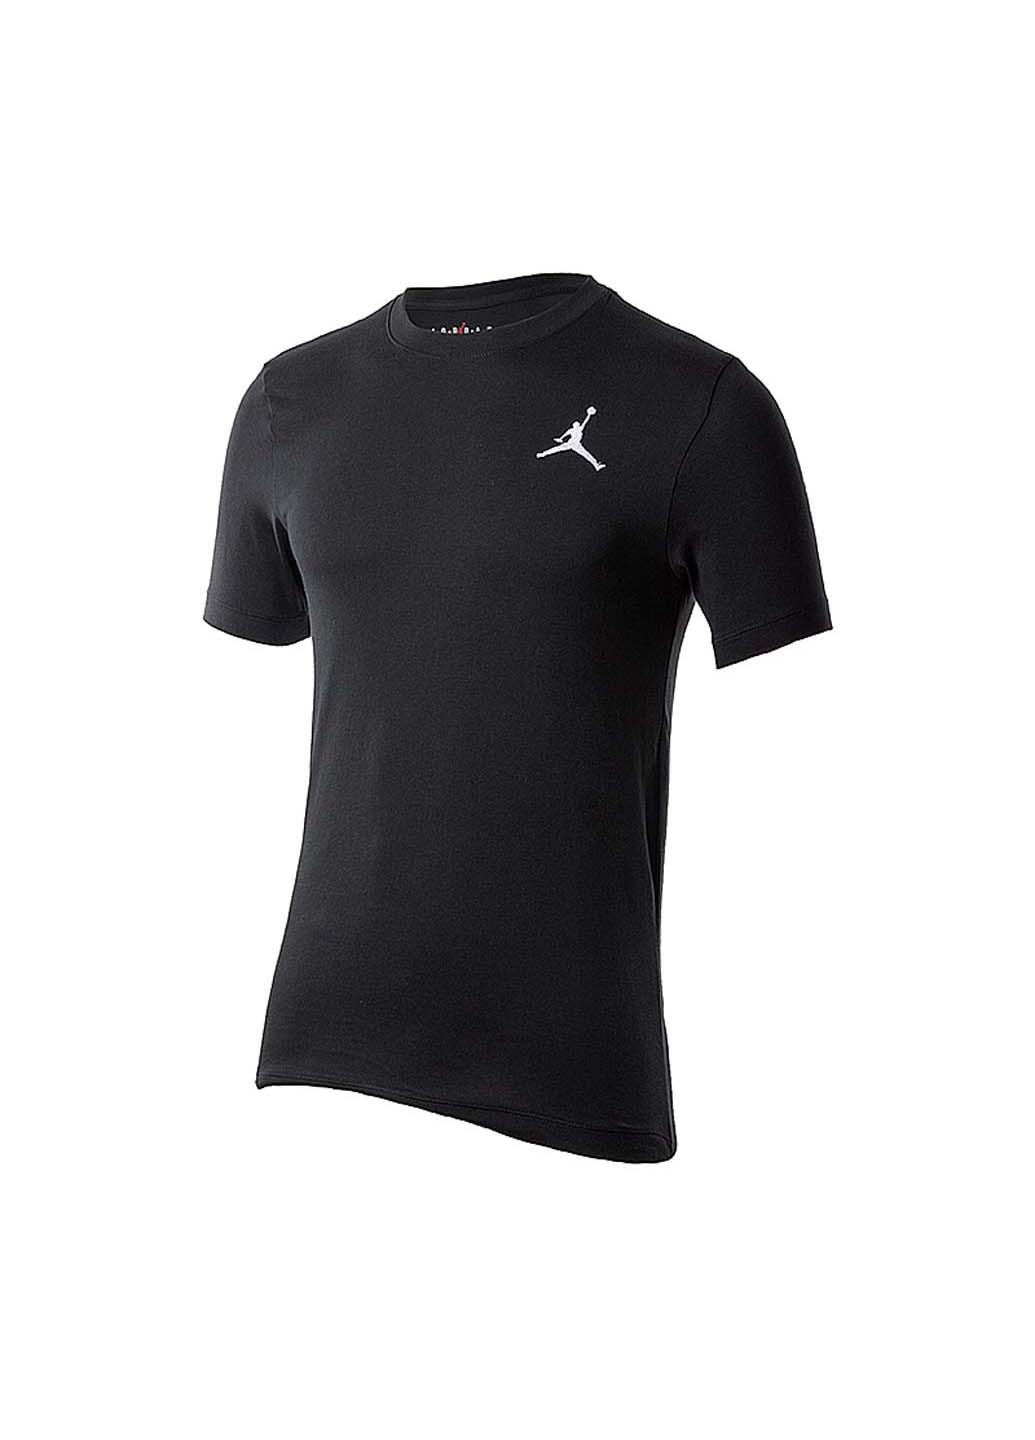 Черная футболка Jordan